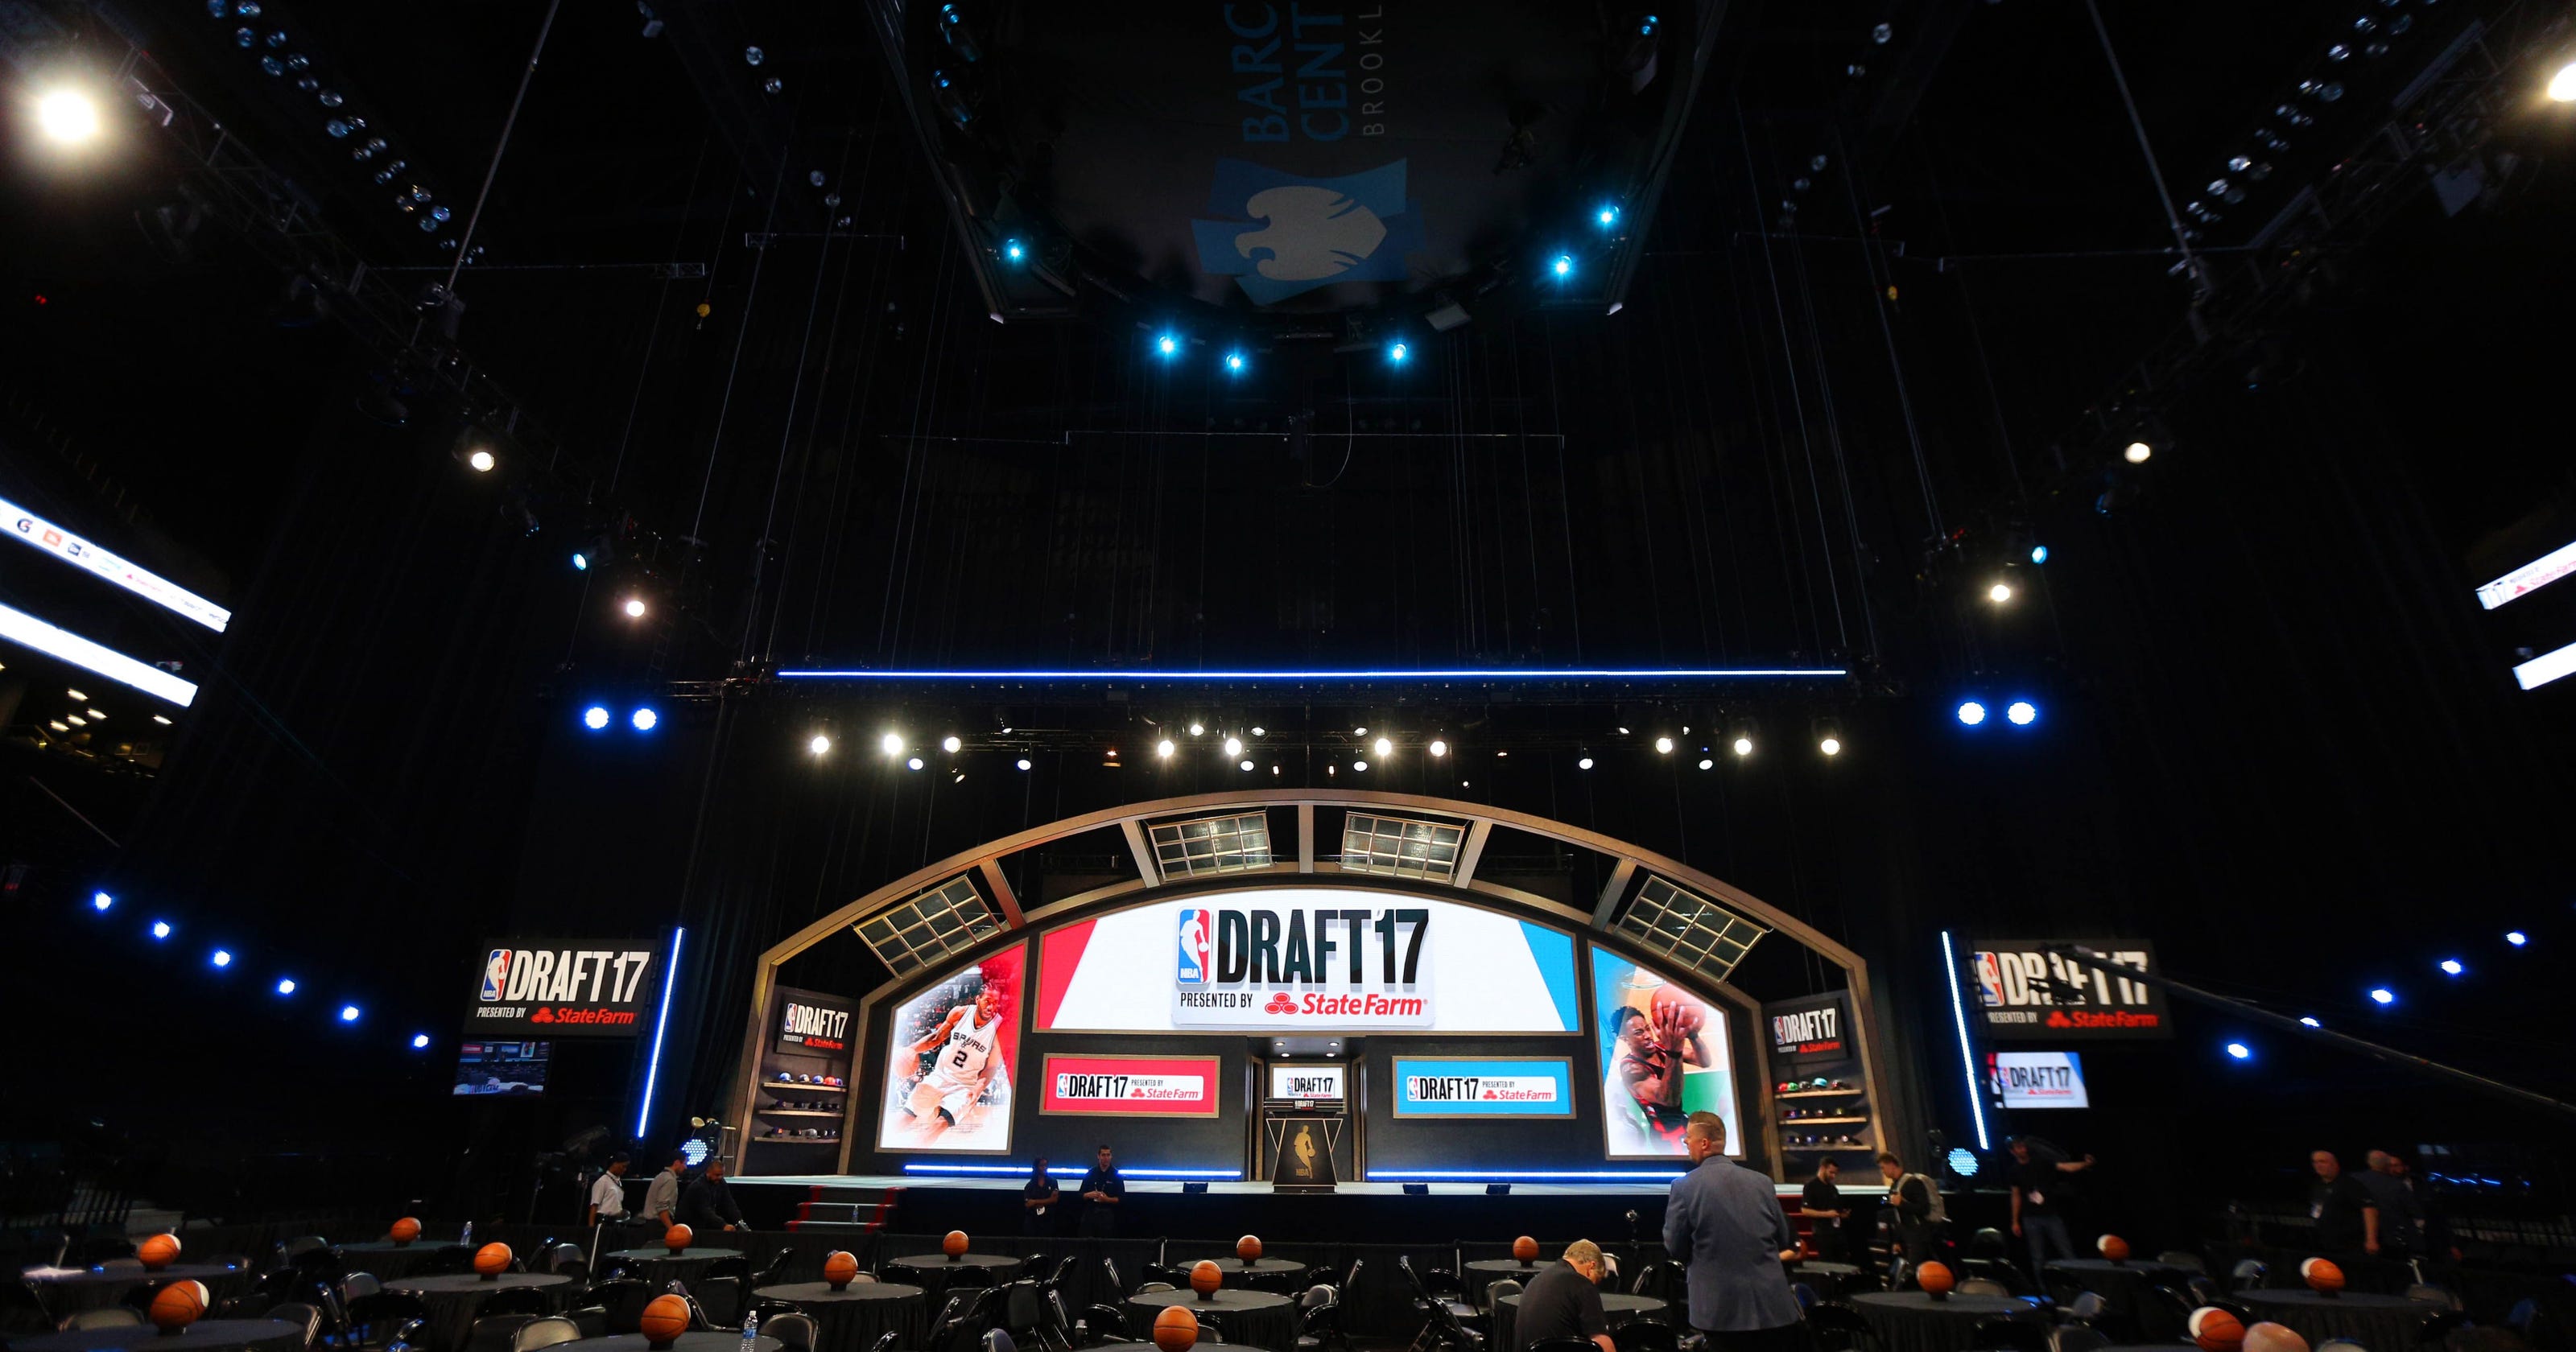 NBA Draft 2019 scehdule venue watch online 